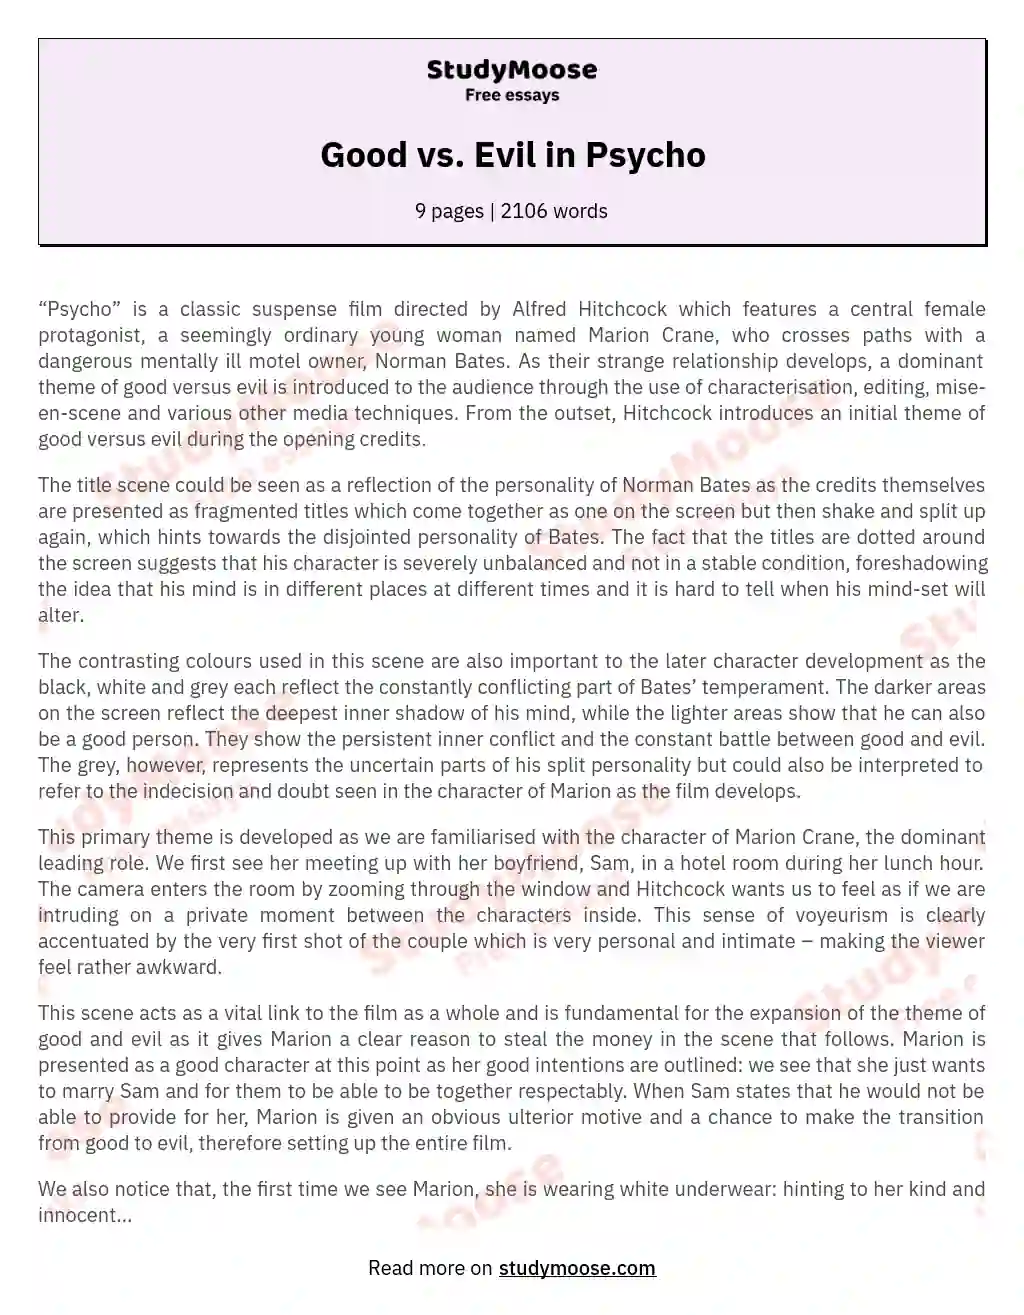 Good vs. Evil in Psycho essay